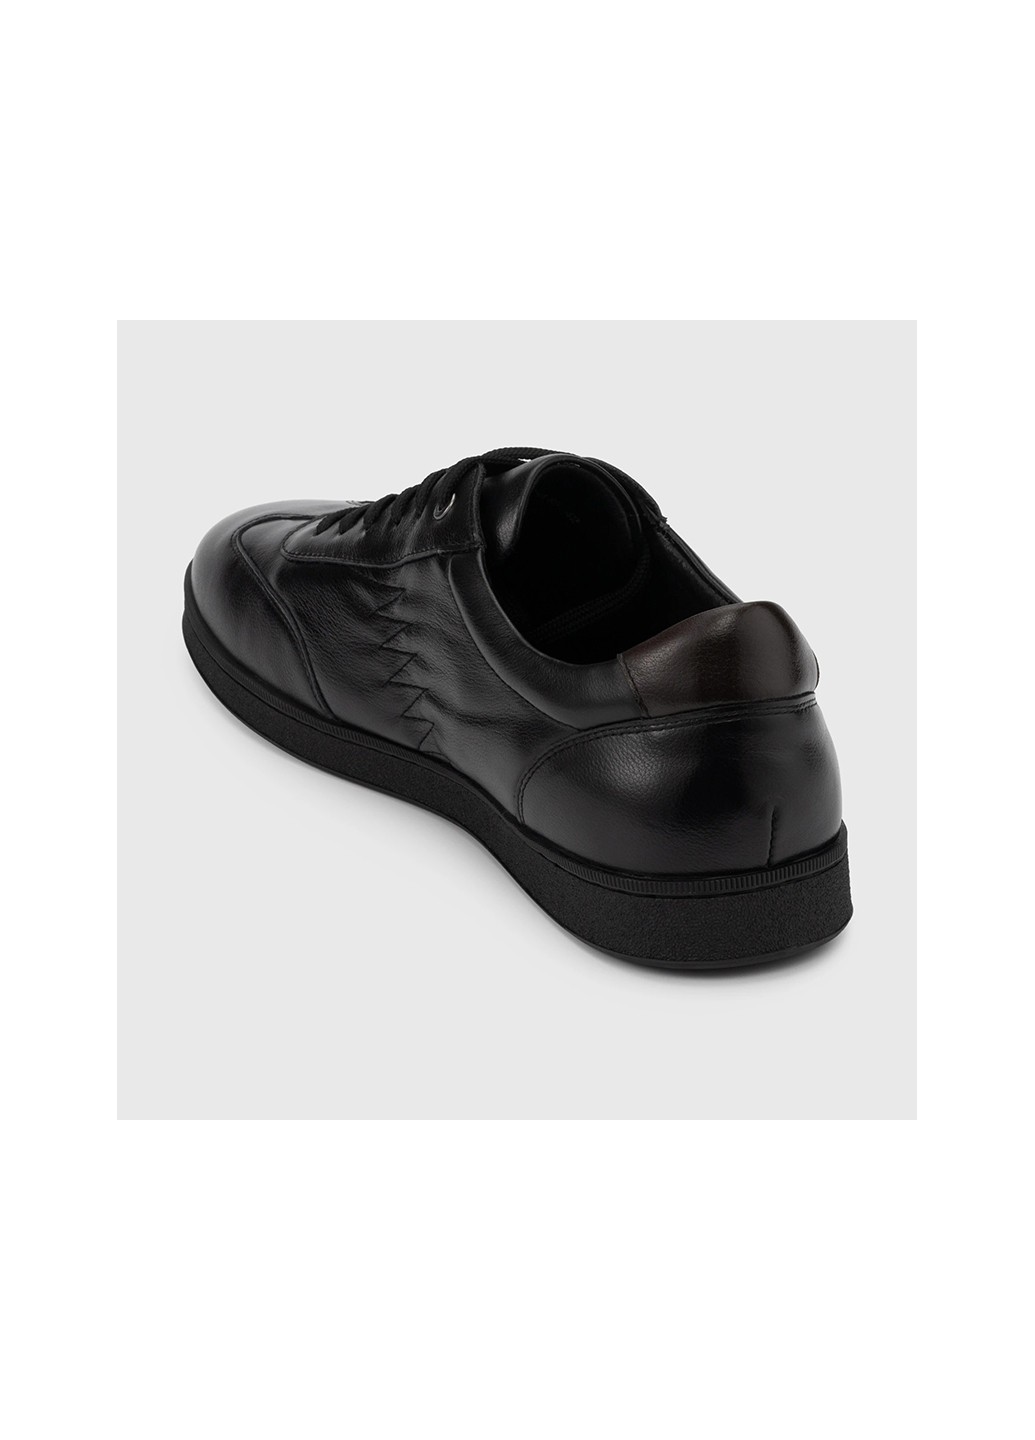 Черные повседневные туфли Stepln